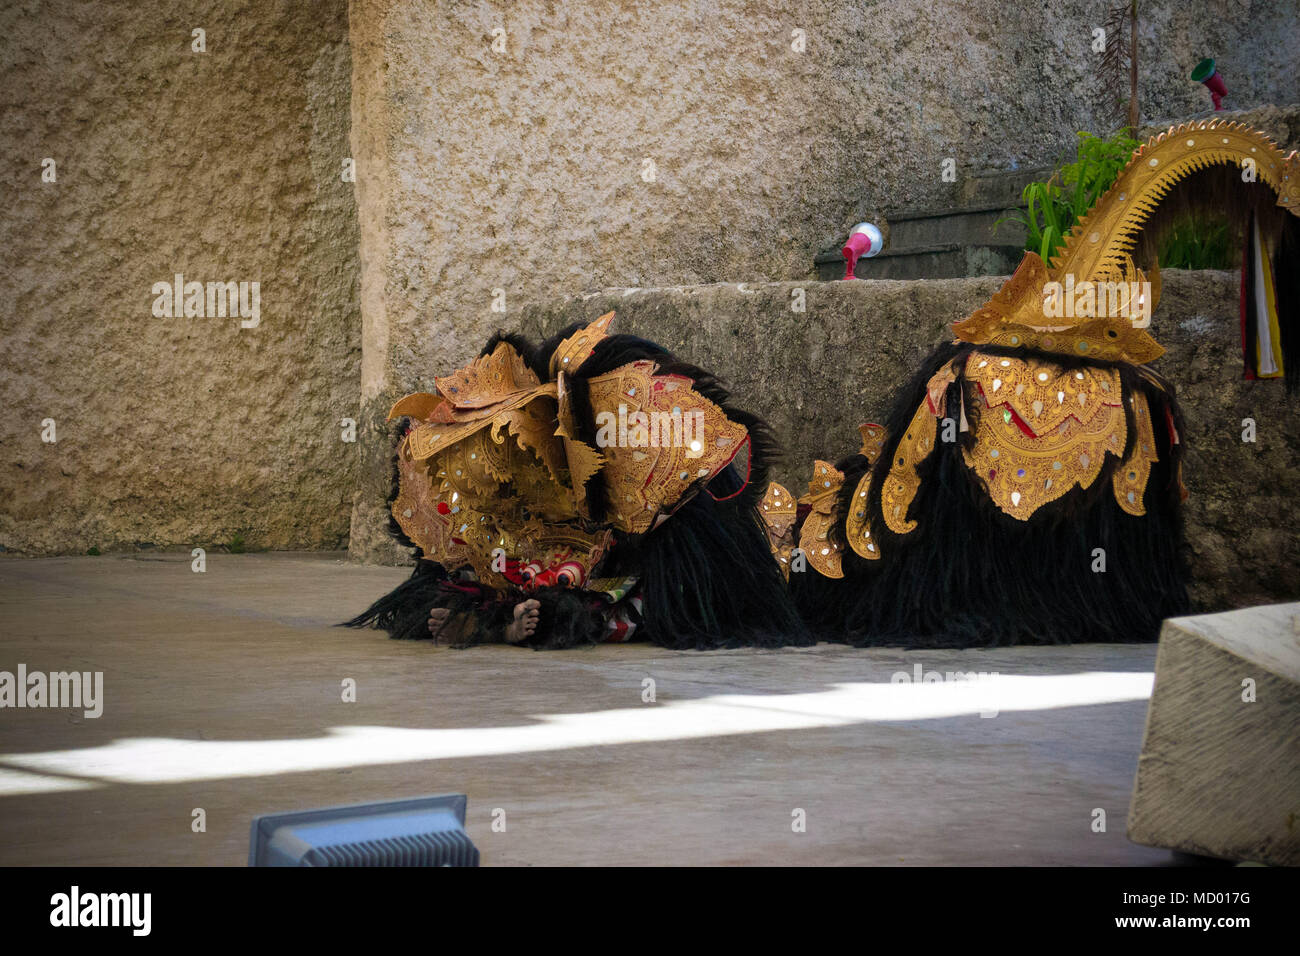 Seni tari yang di pentaskan di garuda wisnu kencana bali kesenian khas bali tari barong Stock Photo